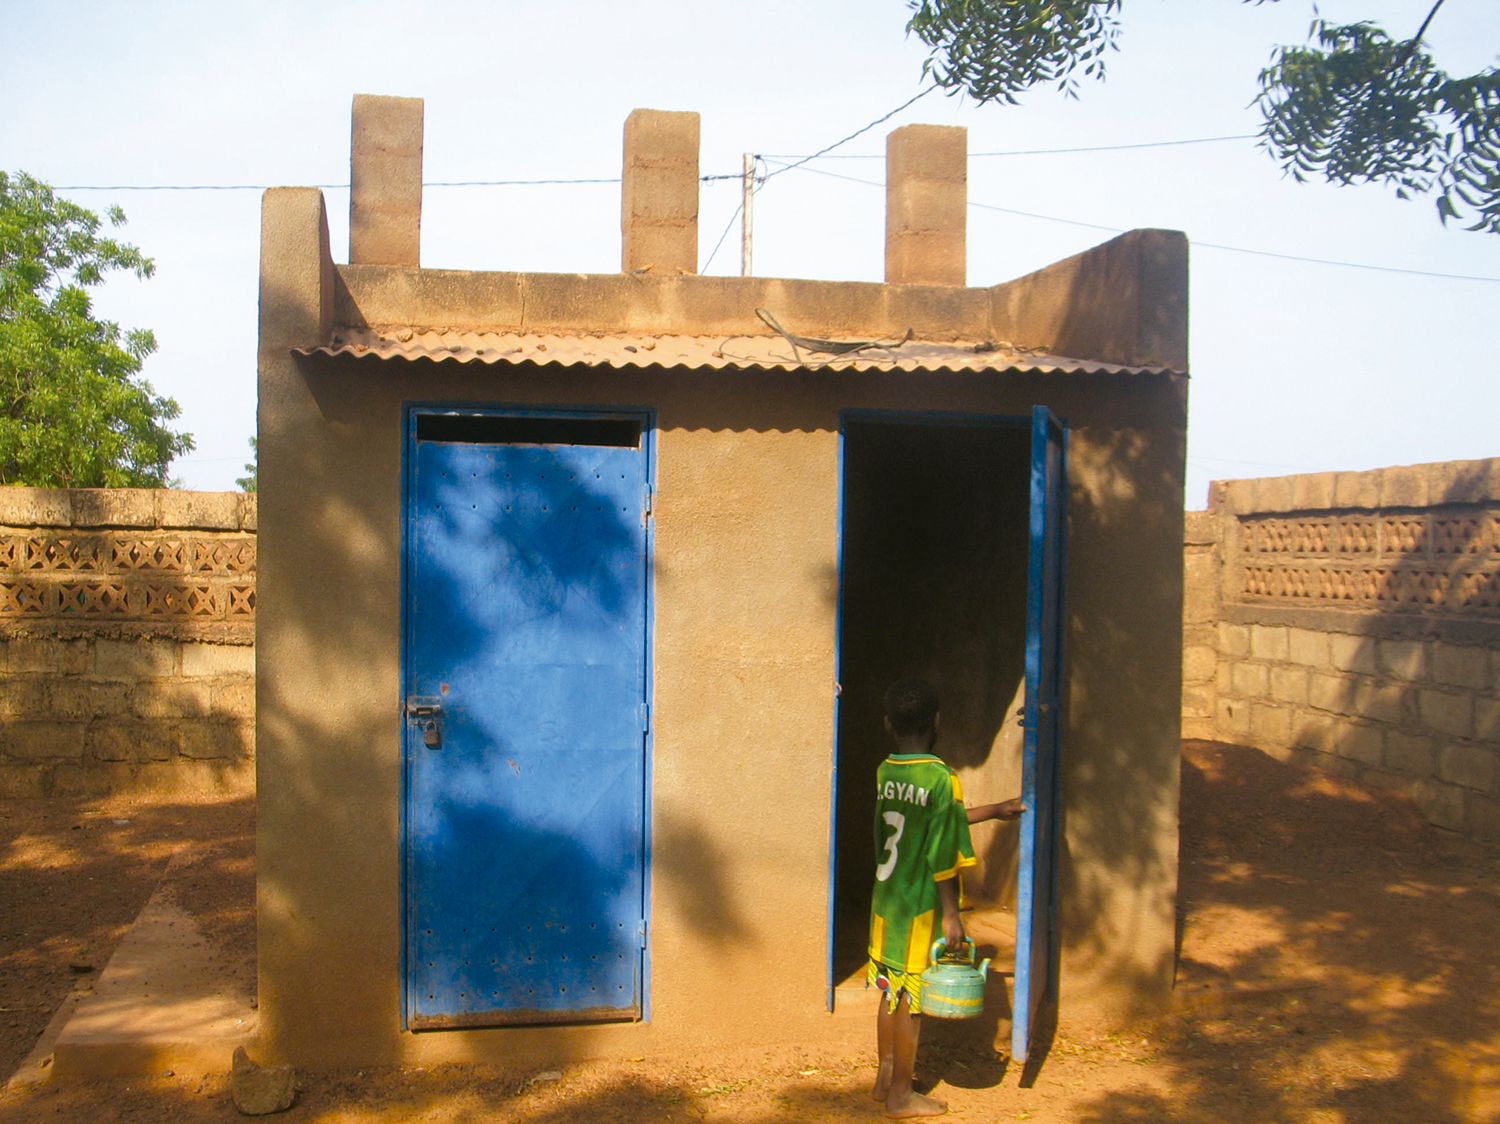 L’ONEA construit des latrines communales aux villages et zones communes comme des marchés. Voici des latrines à Kaya, à 100 kilomètres de la capitale. Crédit photo ONEA